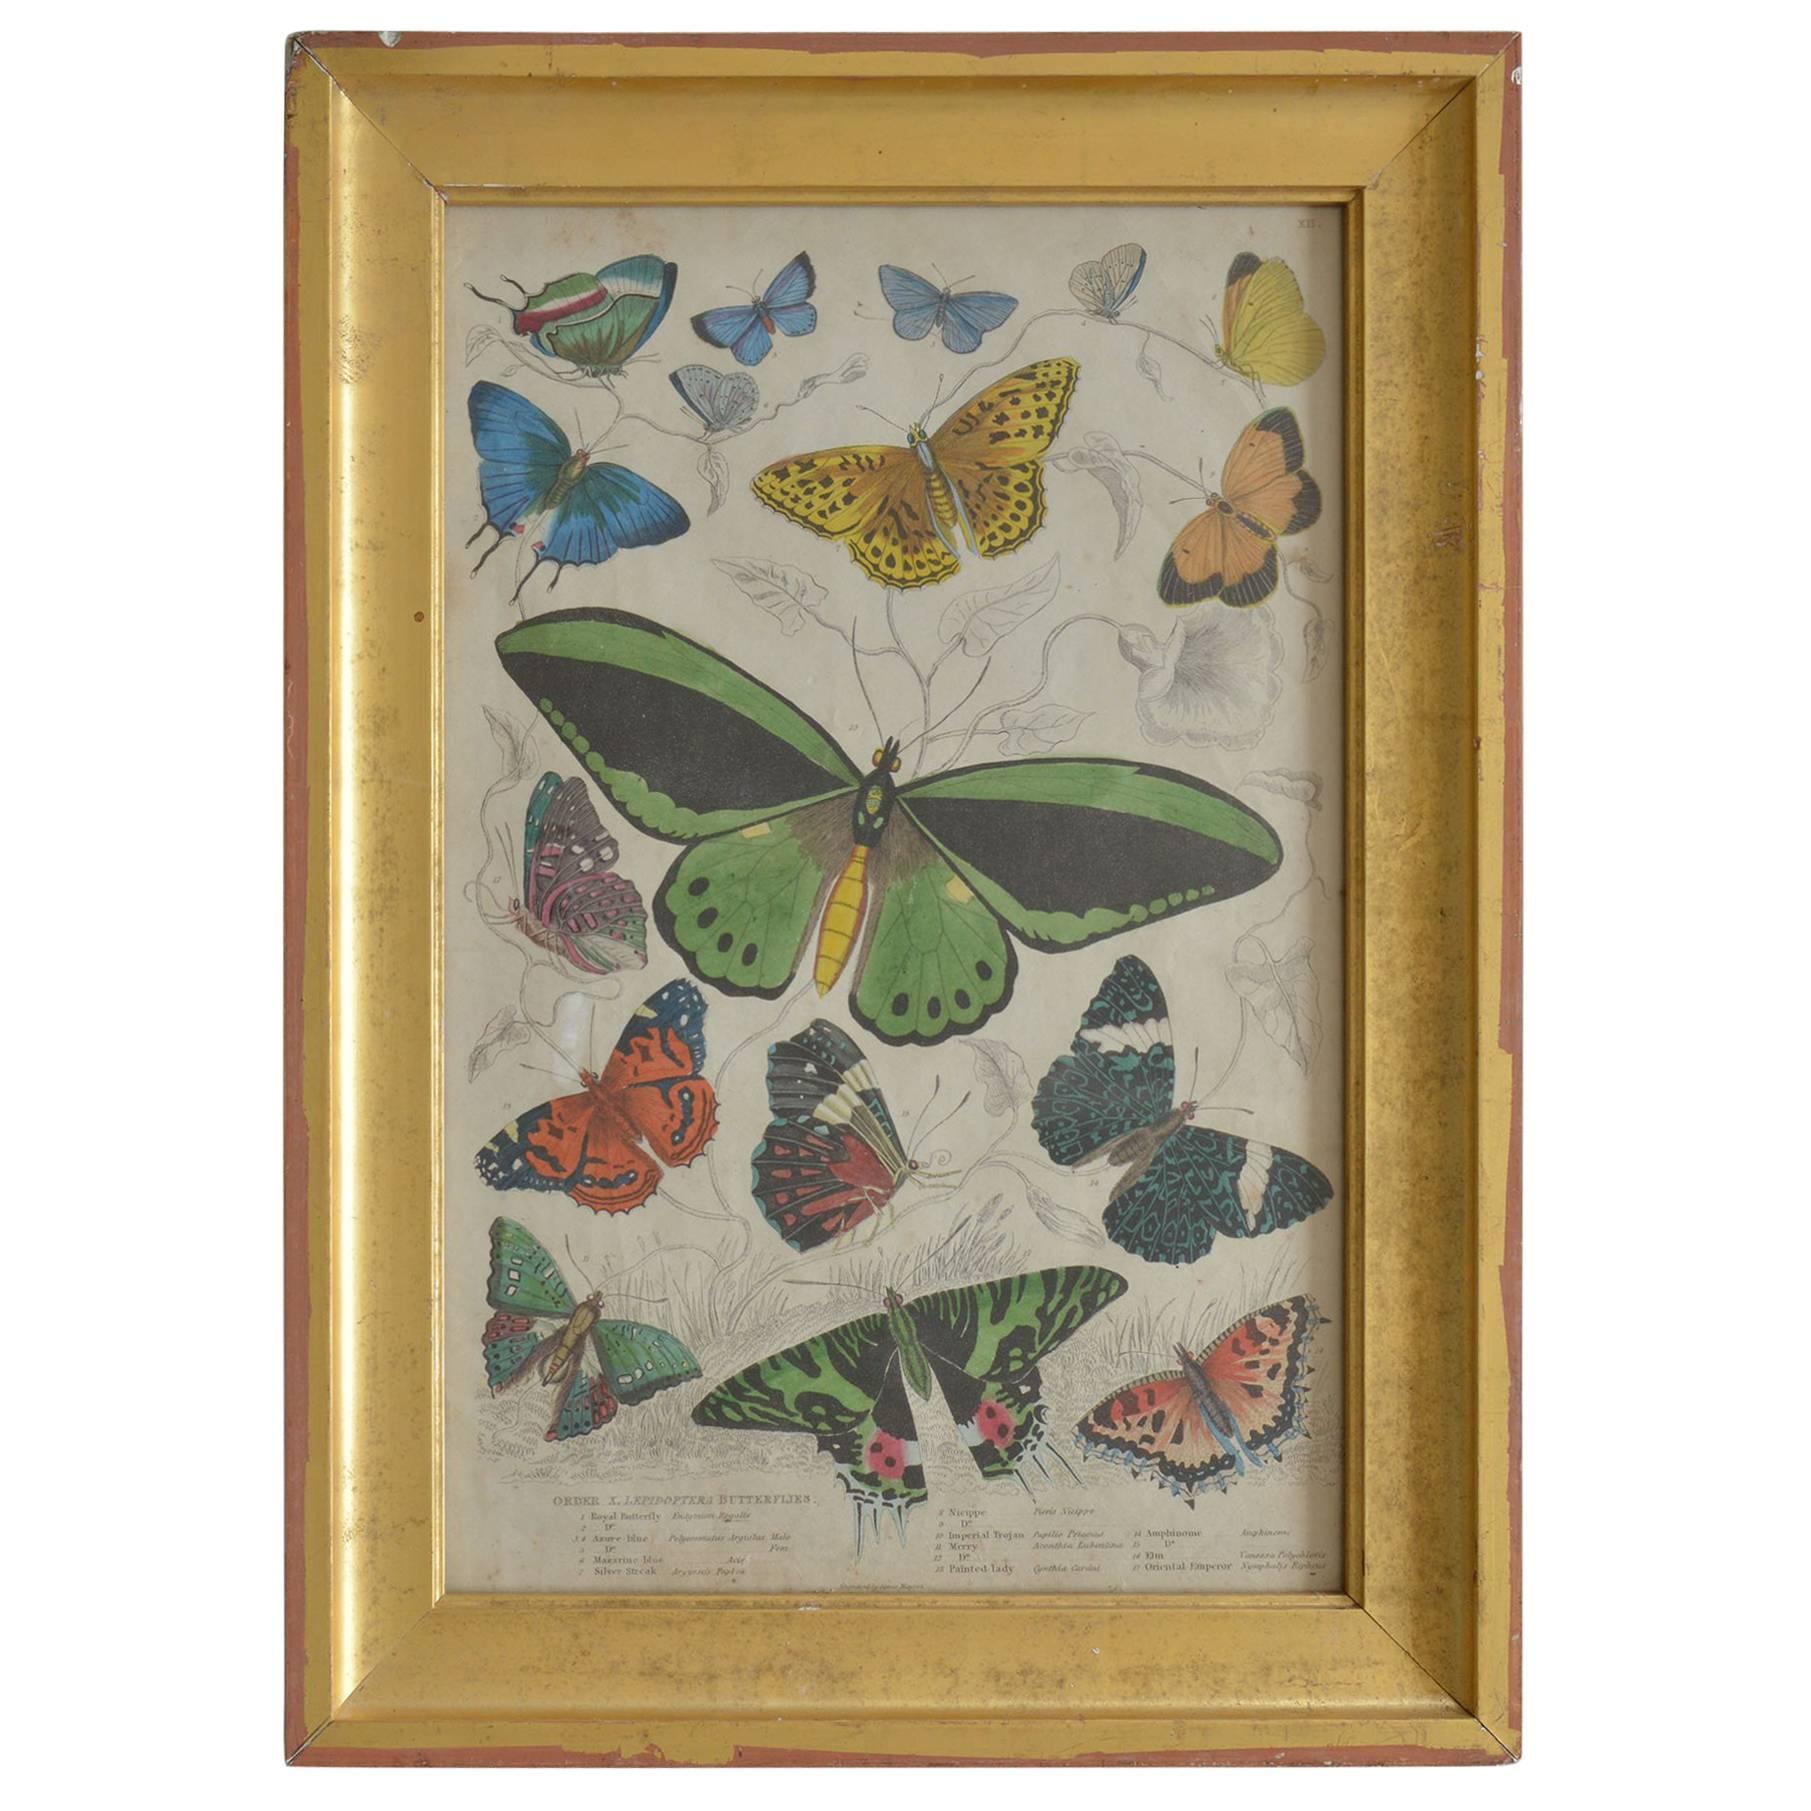 Original Antique Print of Butterflies, 1835